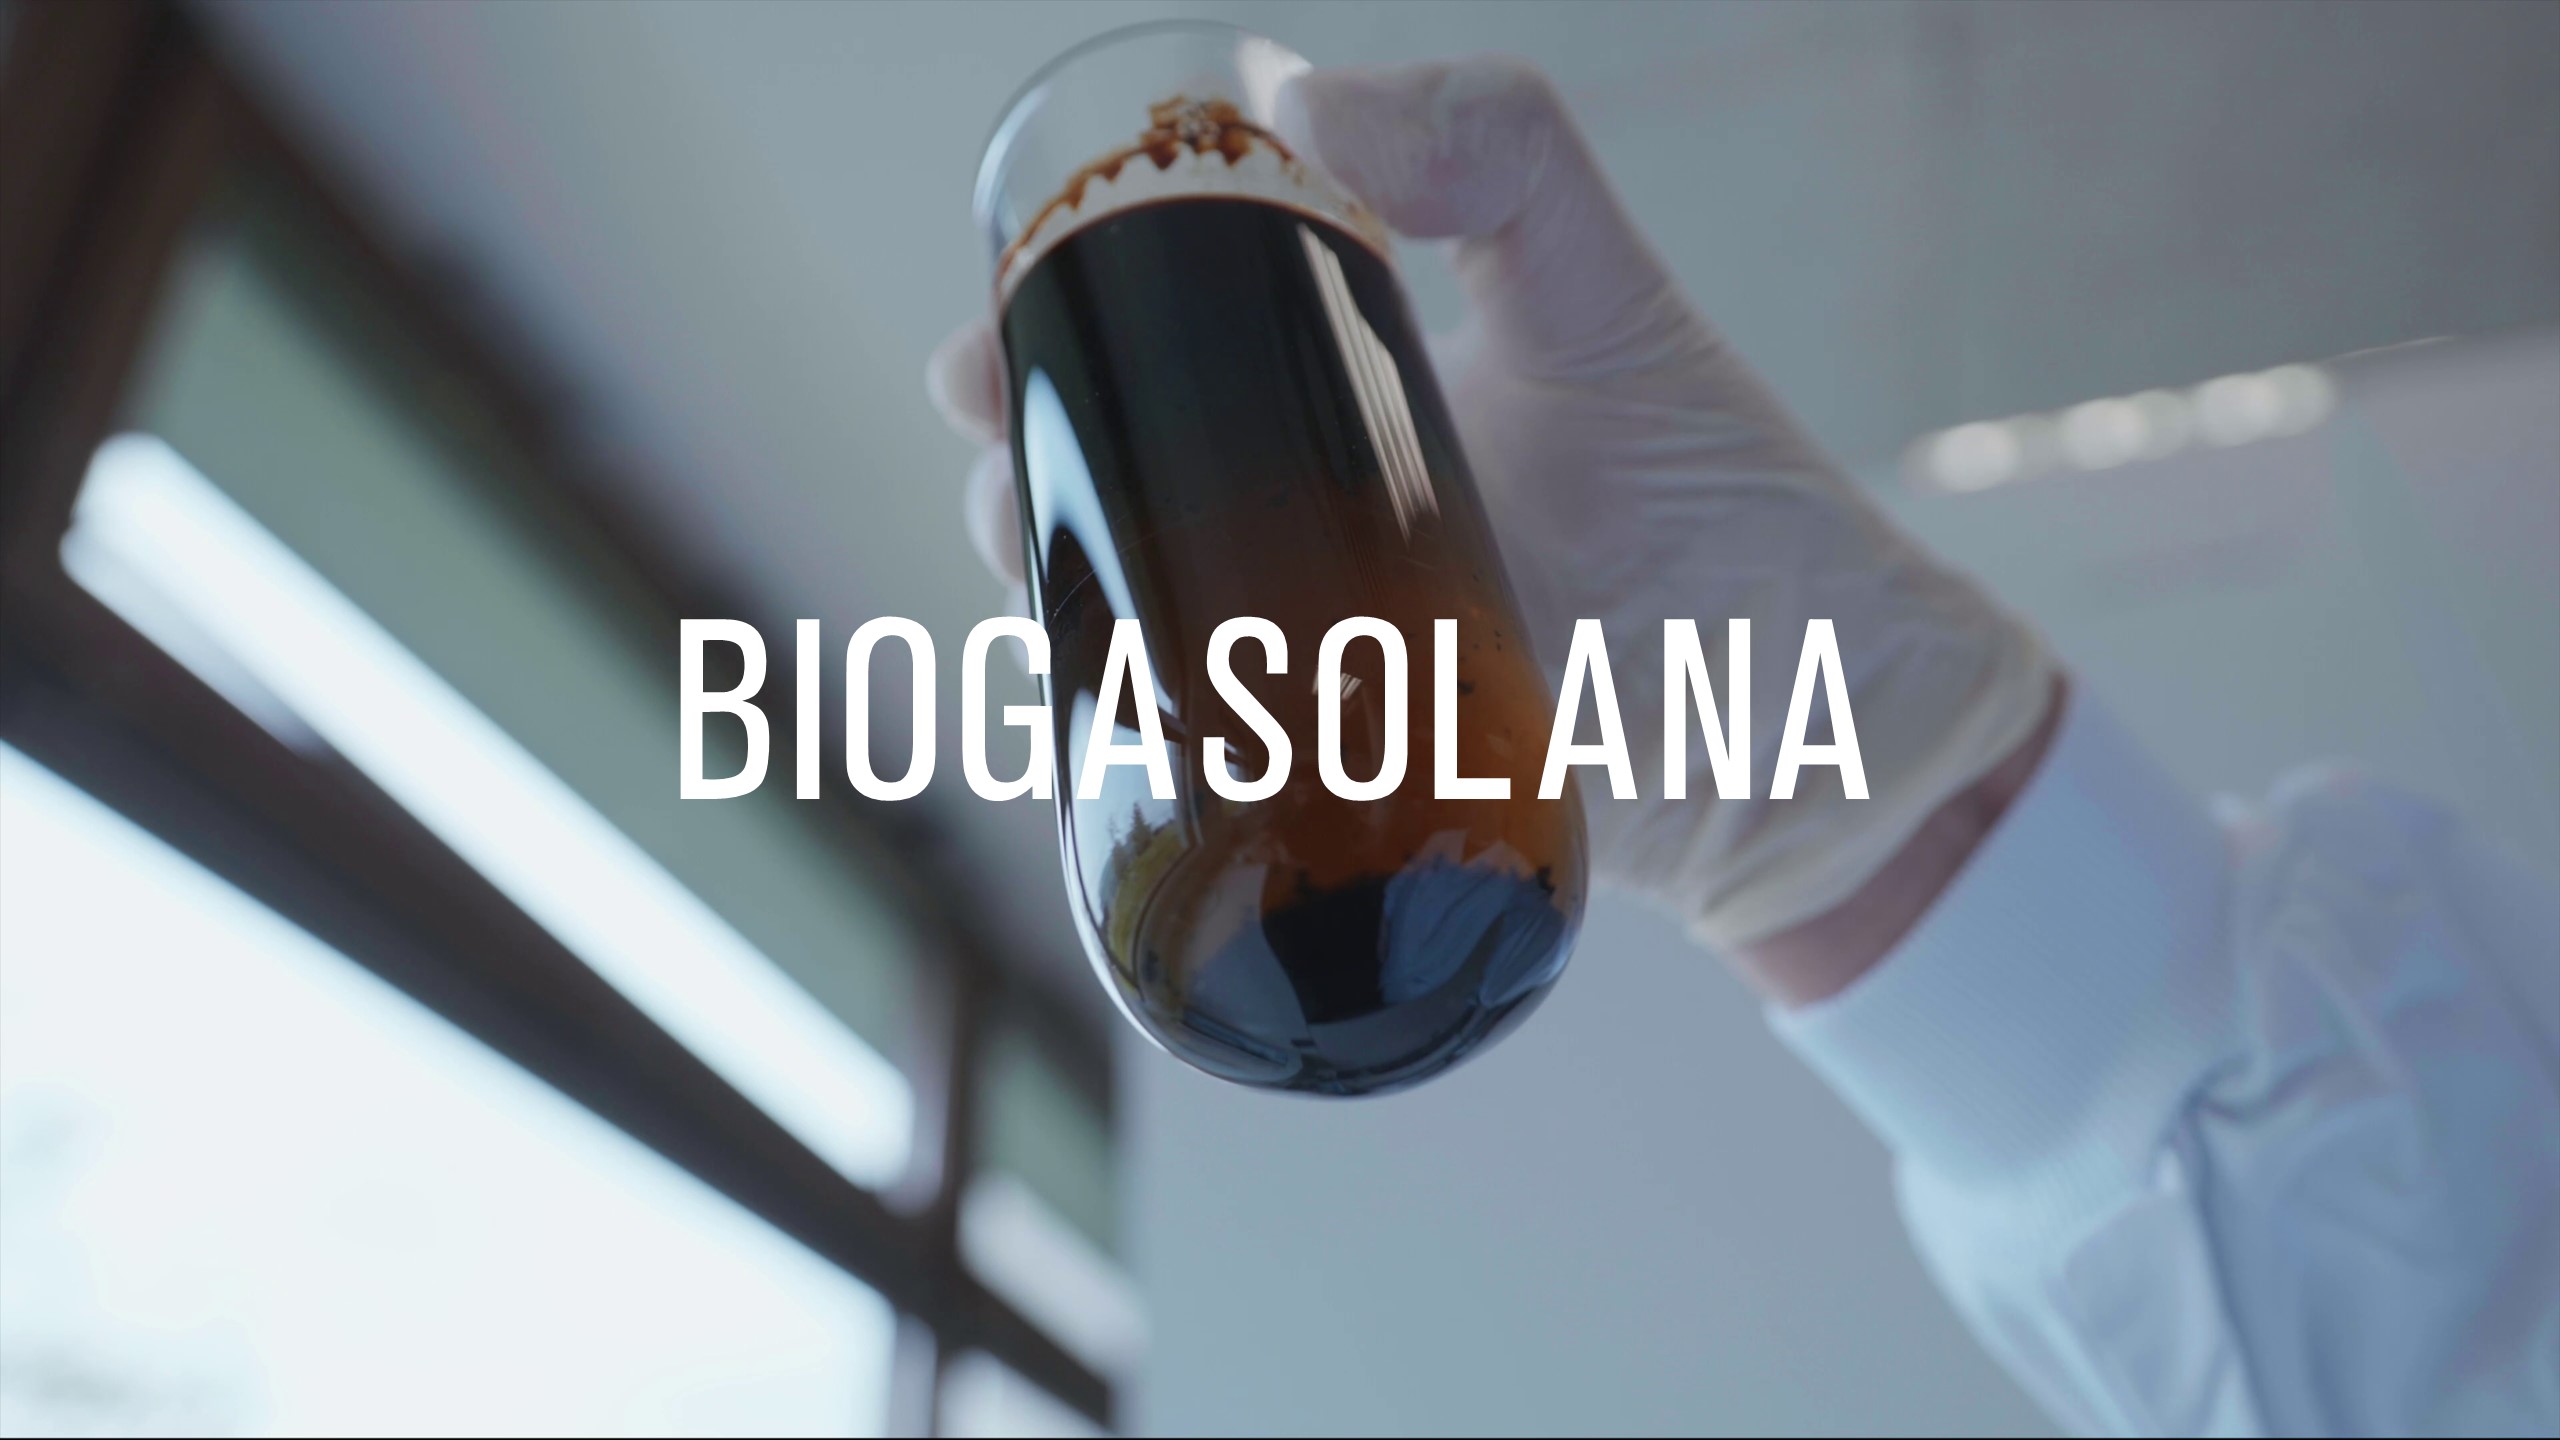 Biogasolana, proyecto colaborativo. Biometano a partir de los lodos de aguas residuales